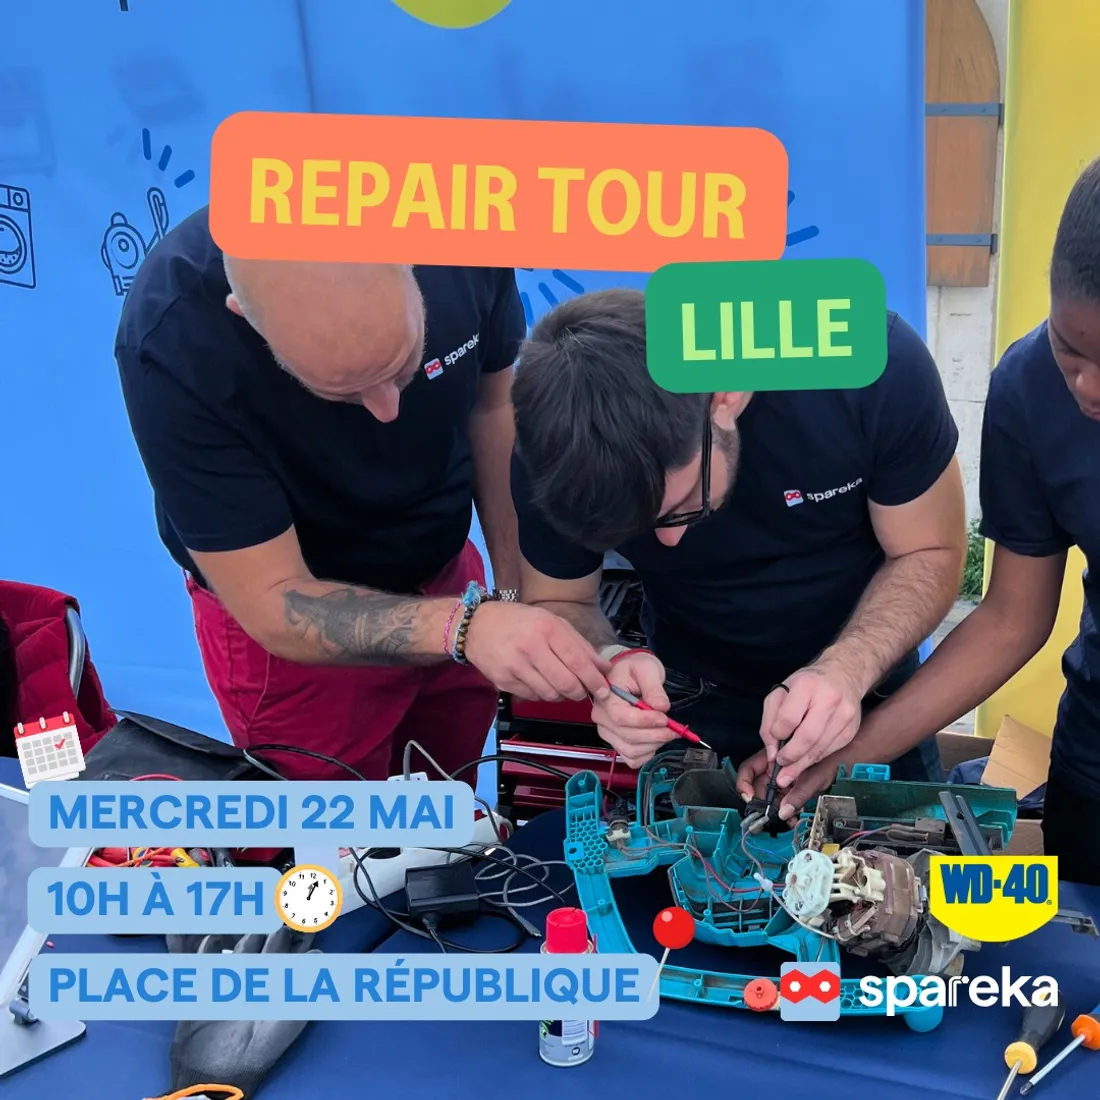 Le Repair Tour de France de passage à Lille ce mercredi